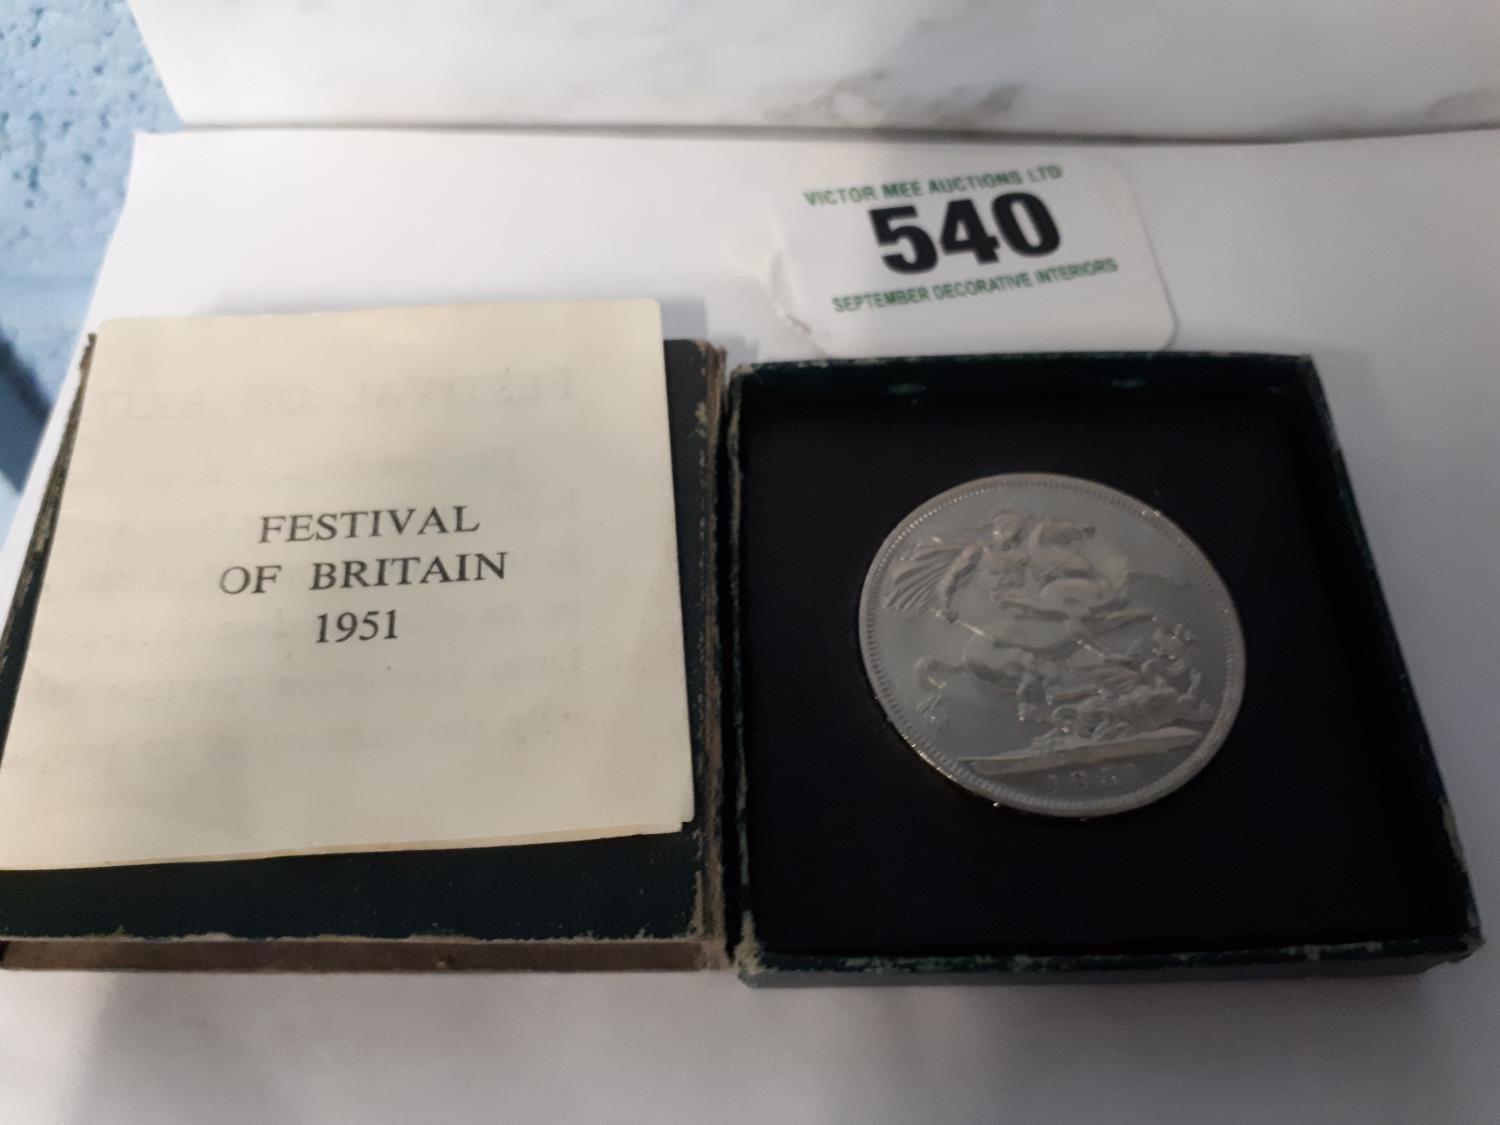 Festival Of Britain 1951 crown in original box - in mint condition.